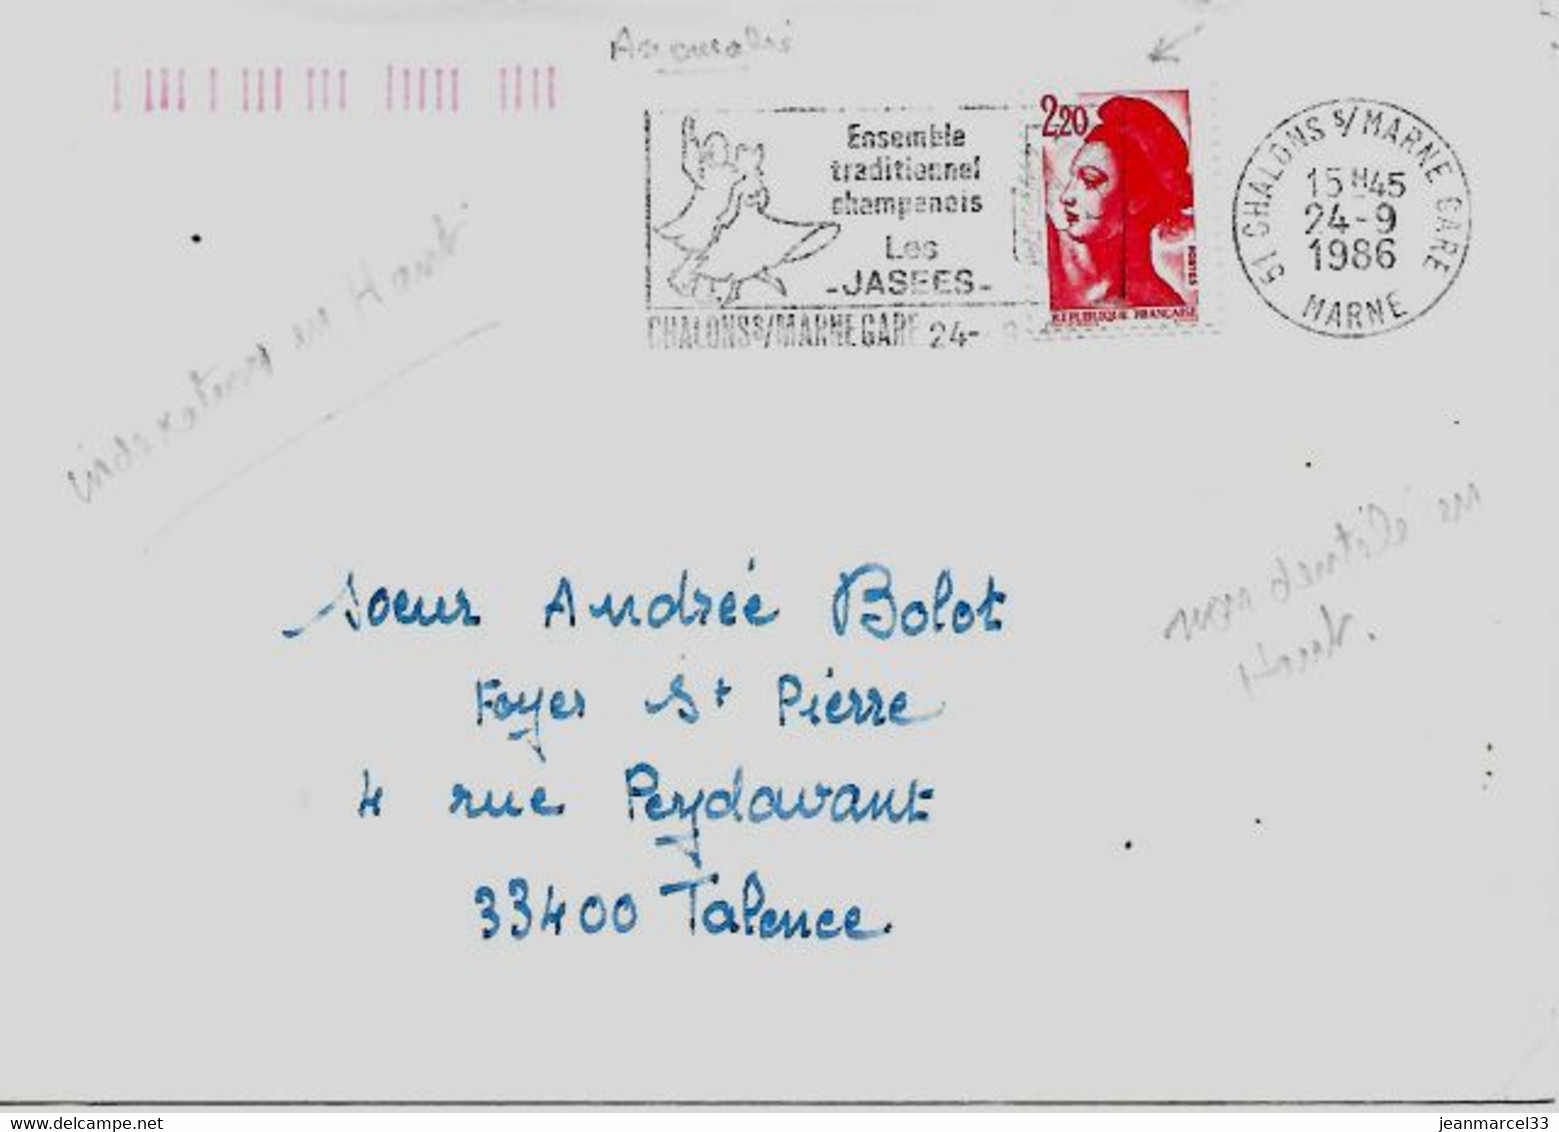 Curiosité 51 Chalons S/Marne Gare 24-9 1986, Timbre Non Dentelé En Haut, Indexation Orange En Haut à Gauche - Storia Postale